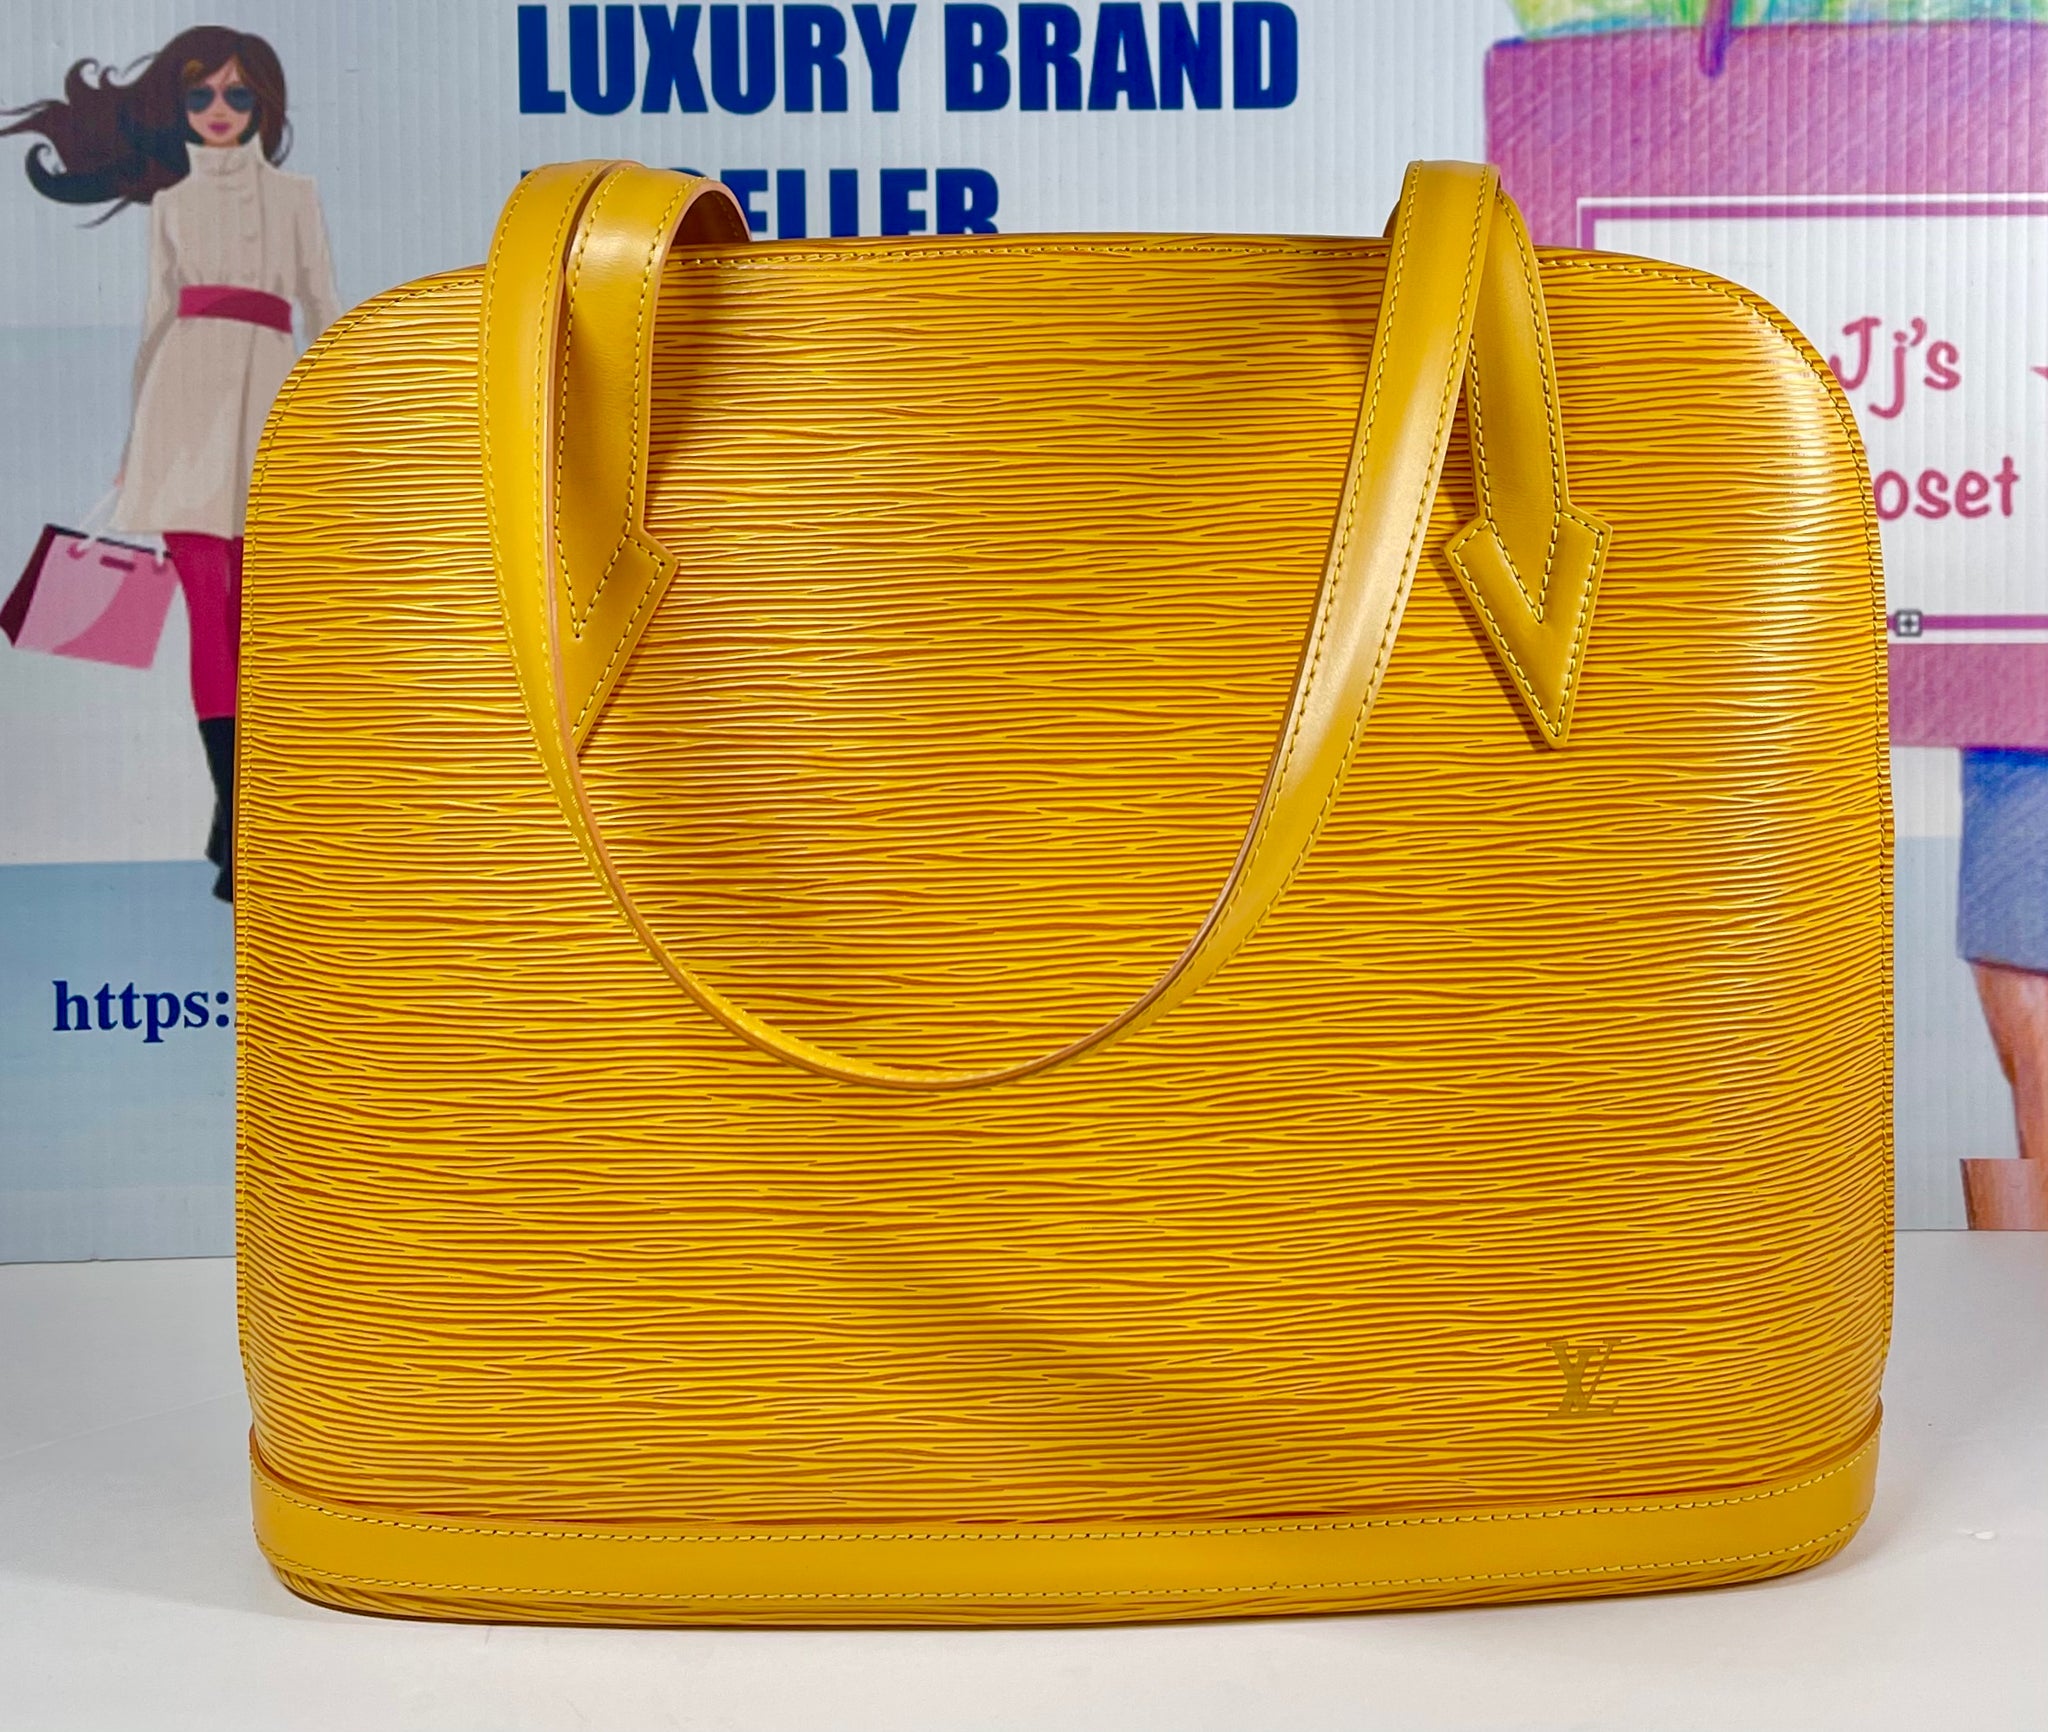 Louis Vuitton Yellow Epi Leather Lussac Tote Bag - Yoogi's Closet